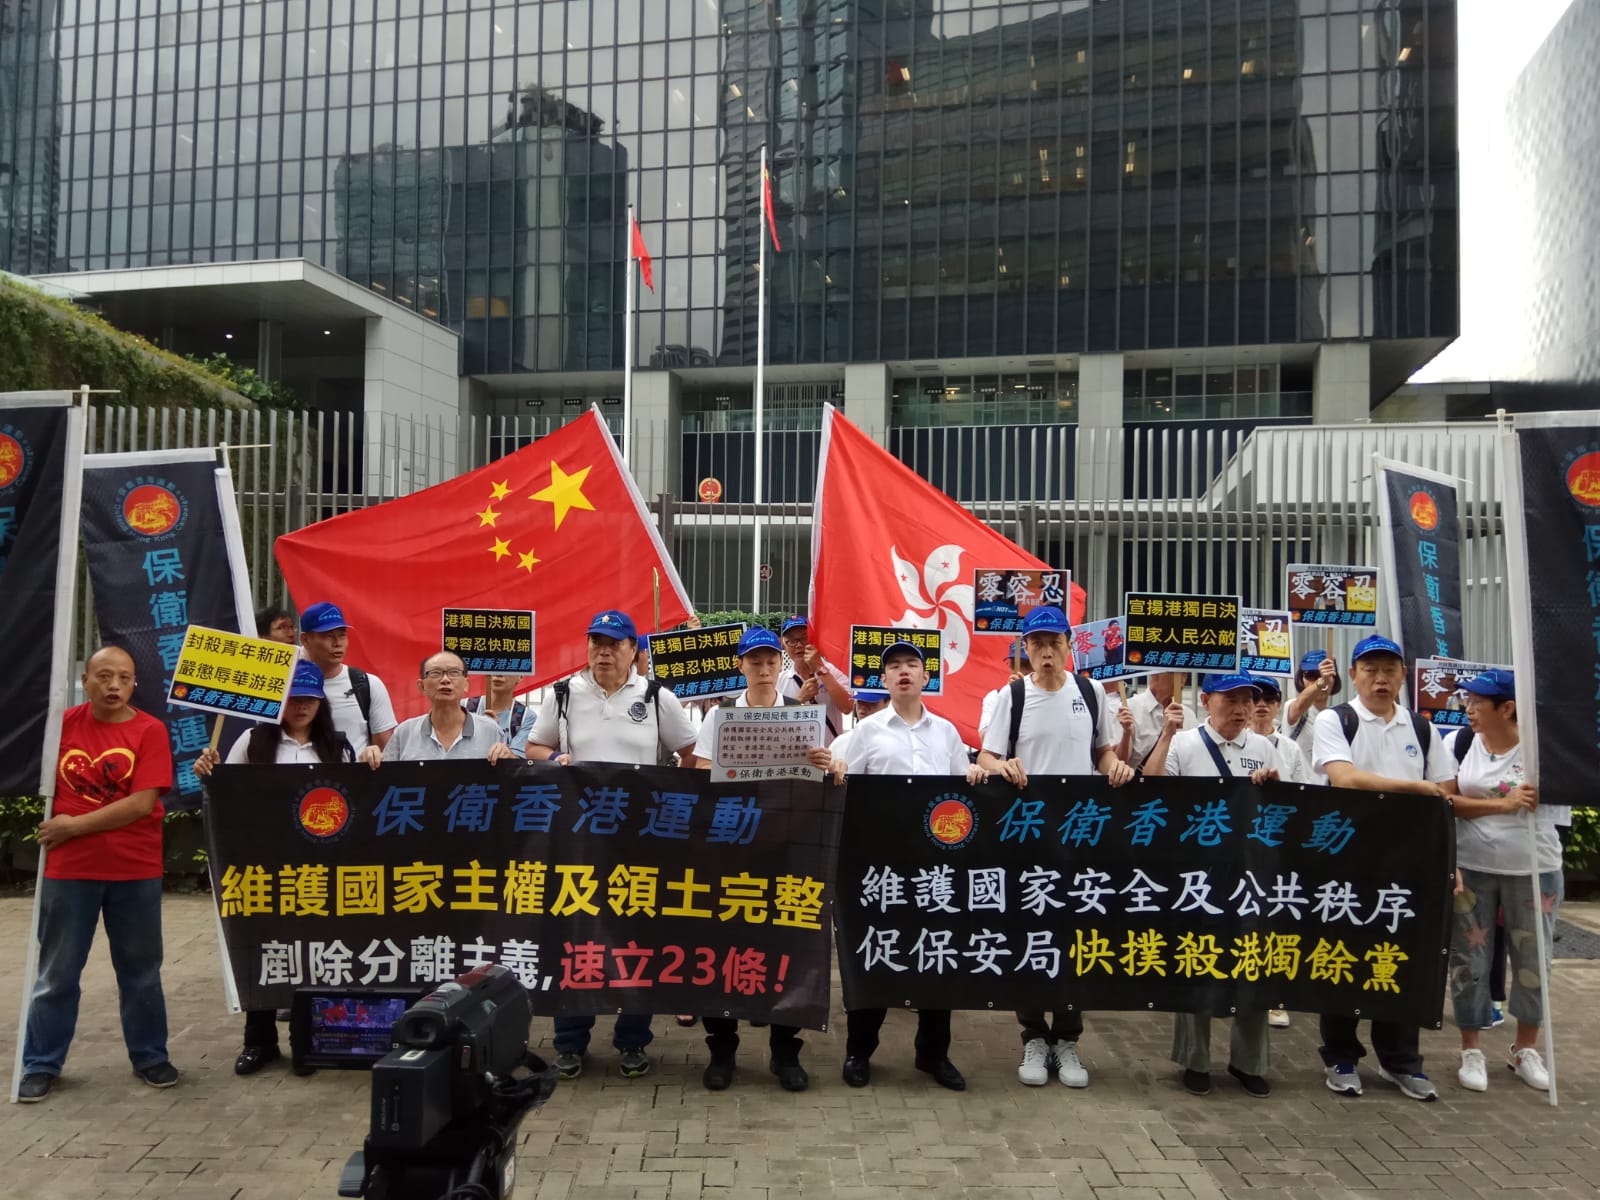 「保衛香港運動」主辦 : 「促請保安局封殺港獨餘黨」遊行集會